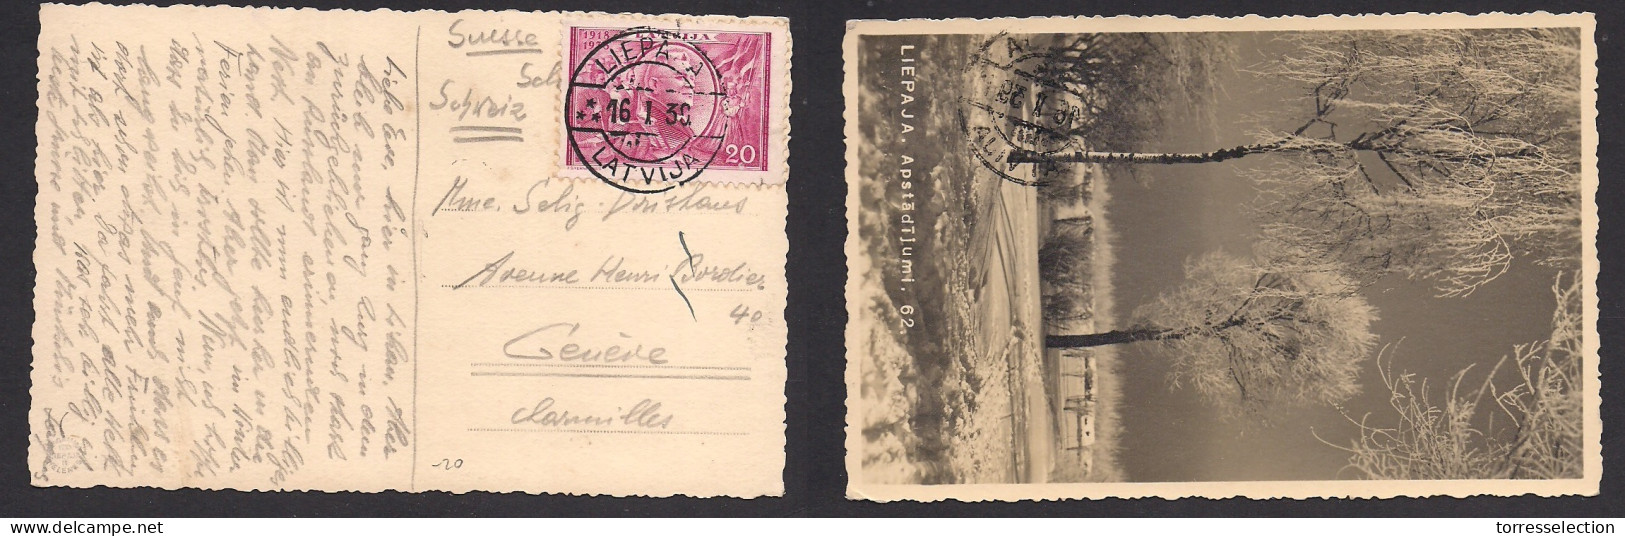 LATVIA. 1939 (16 Jan) Liepaja - Switzerland, Geneve. Single 20c Violet Fkd Ppc. Fine. - Latvia